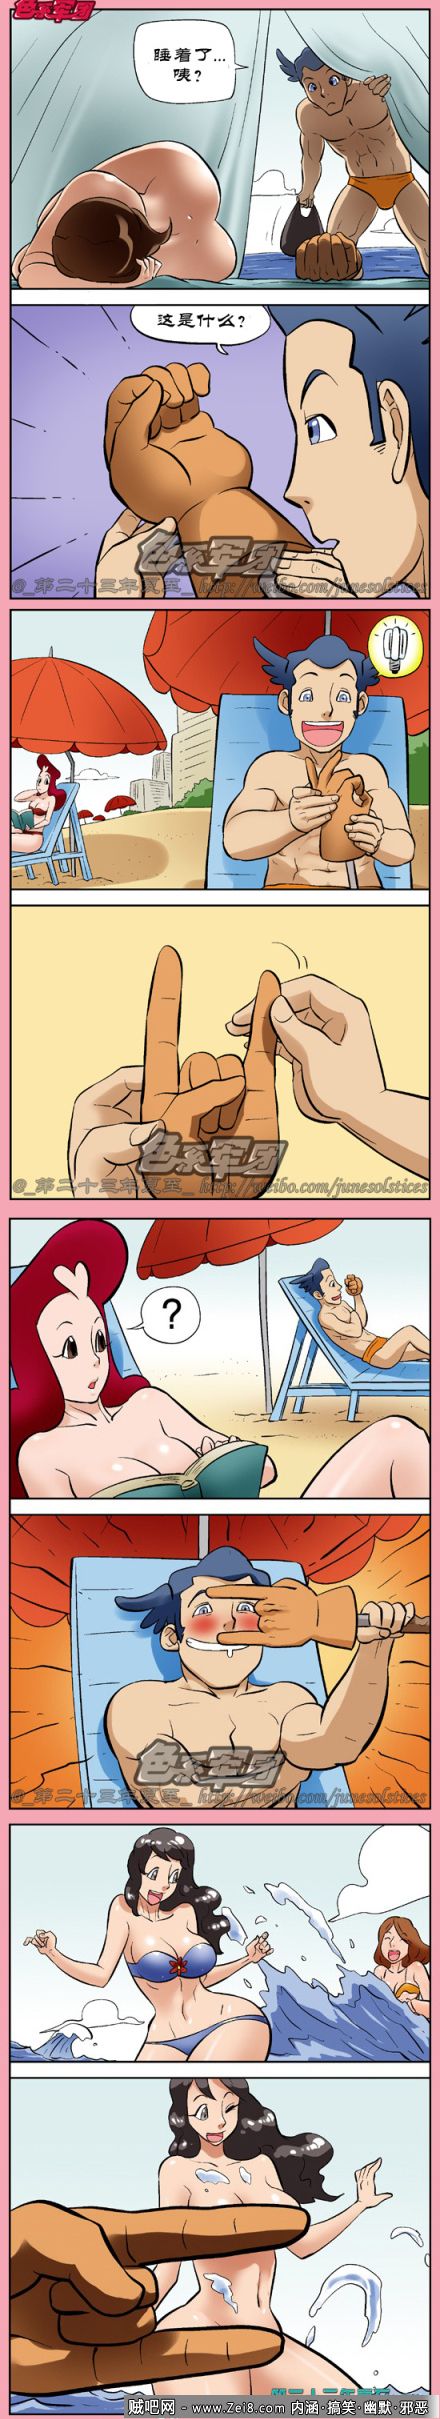 [沙滩邪恶漫画]：性福生活自己创造